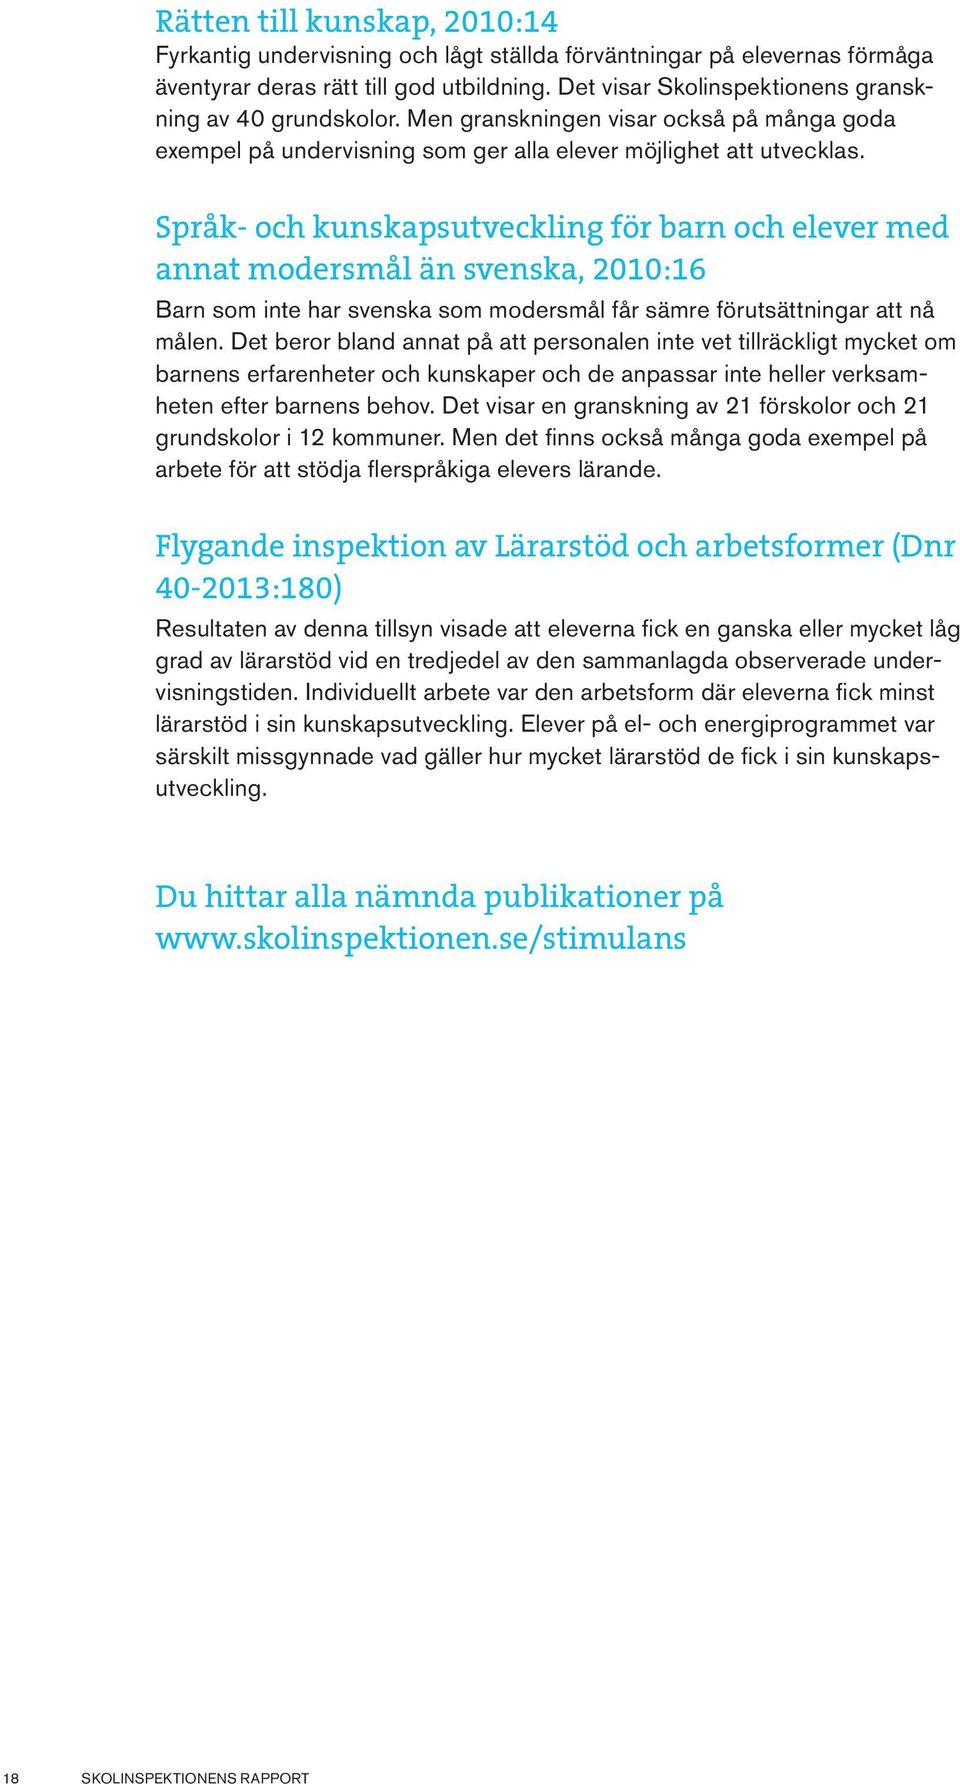 (2012), Utmärkt undervisning: Framgångsfaktorer i svensk och internationell belysning. Stockholm, Natur och kultur.